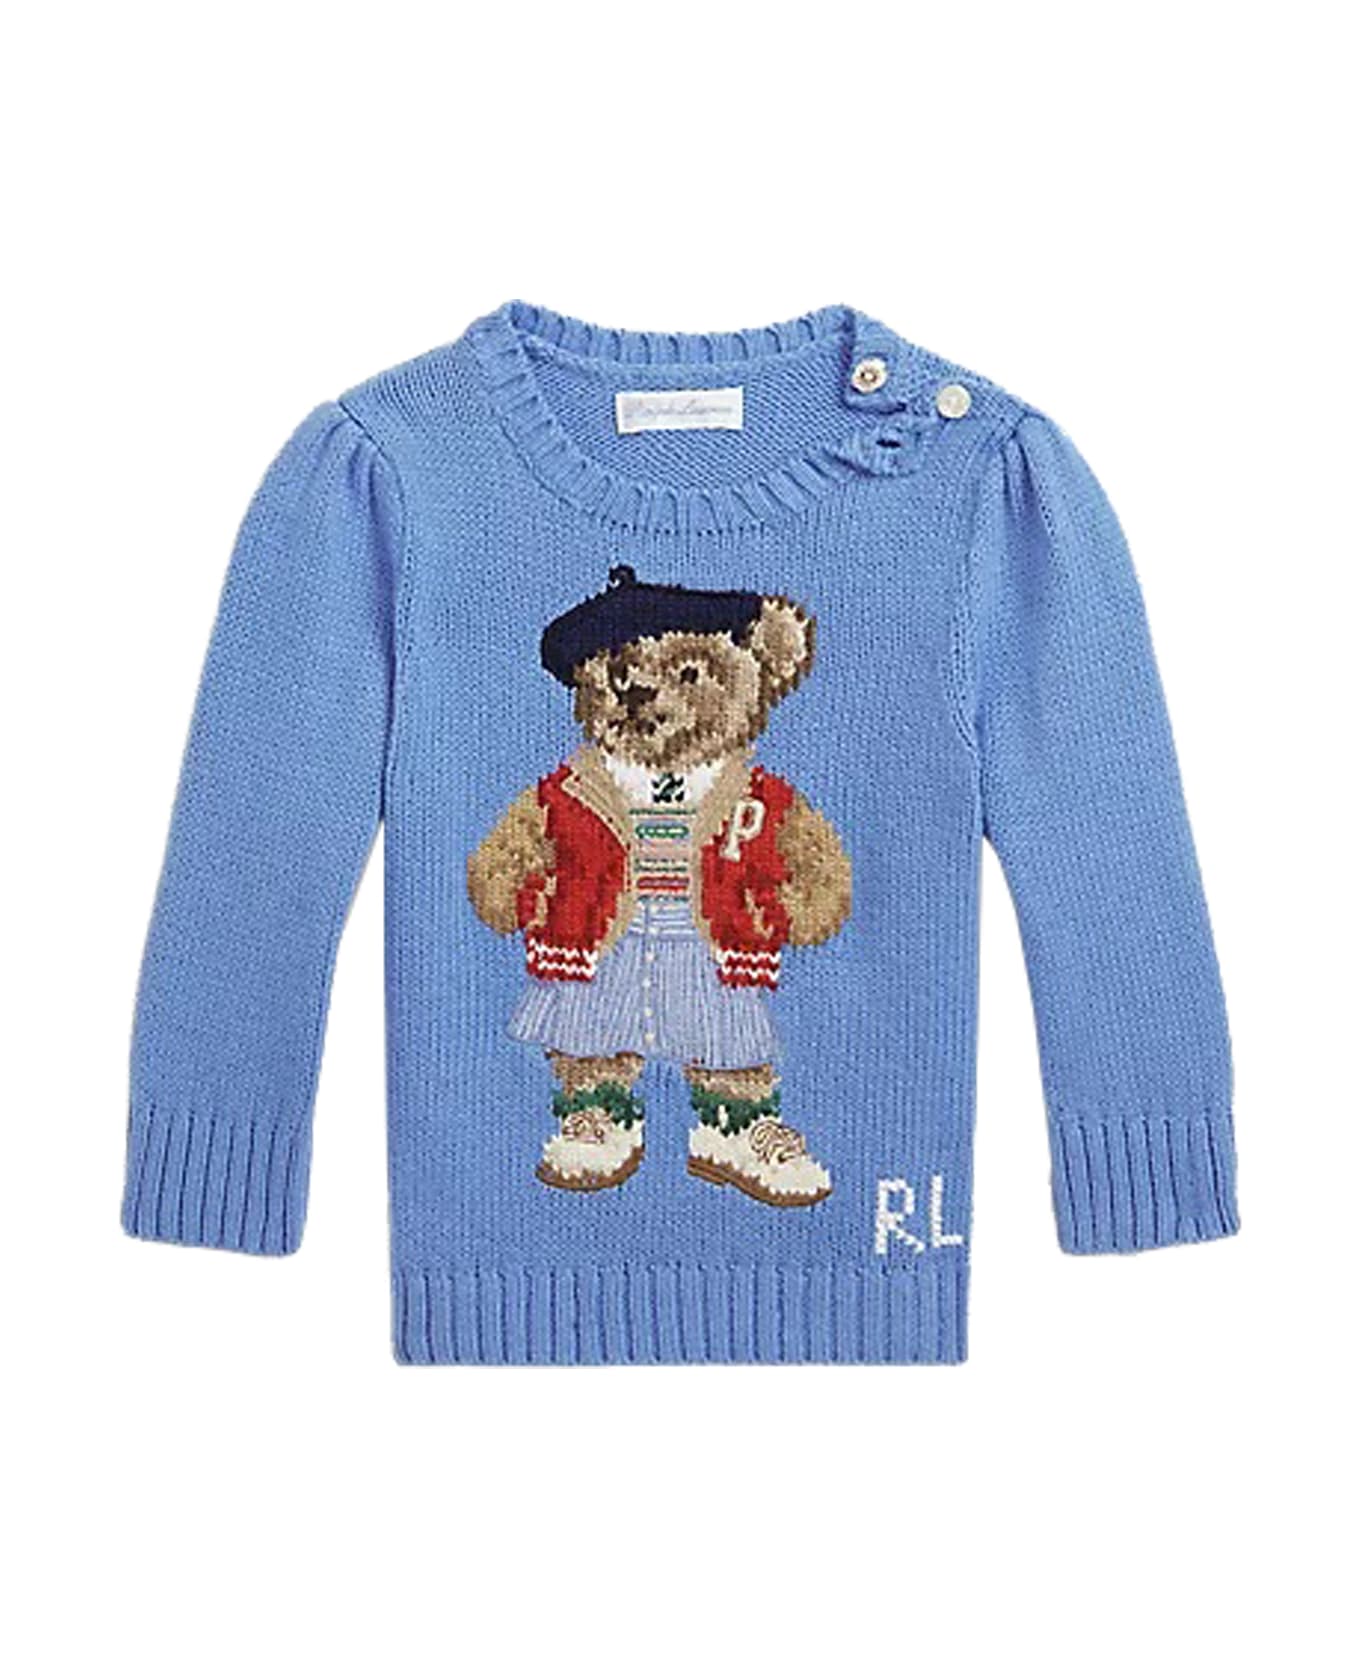 Ralph Lauren Cotton Sweater - Light blue